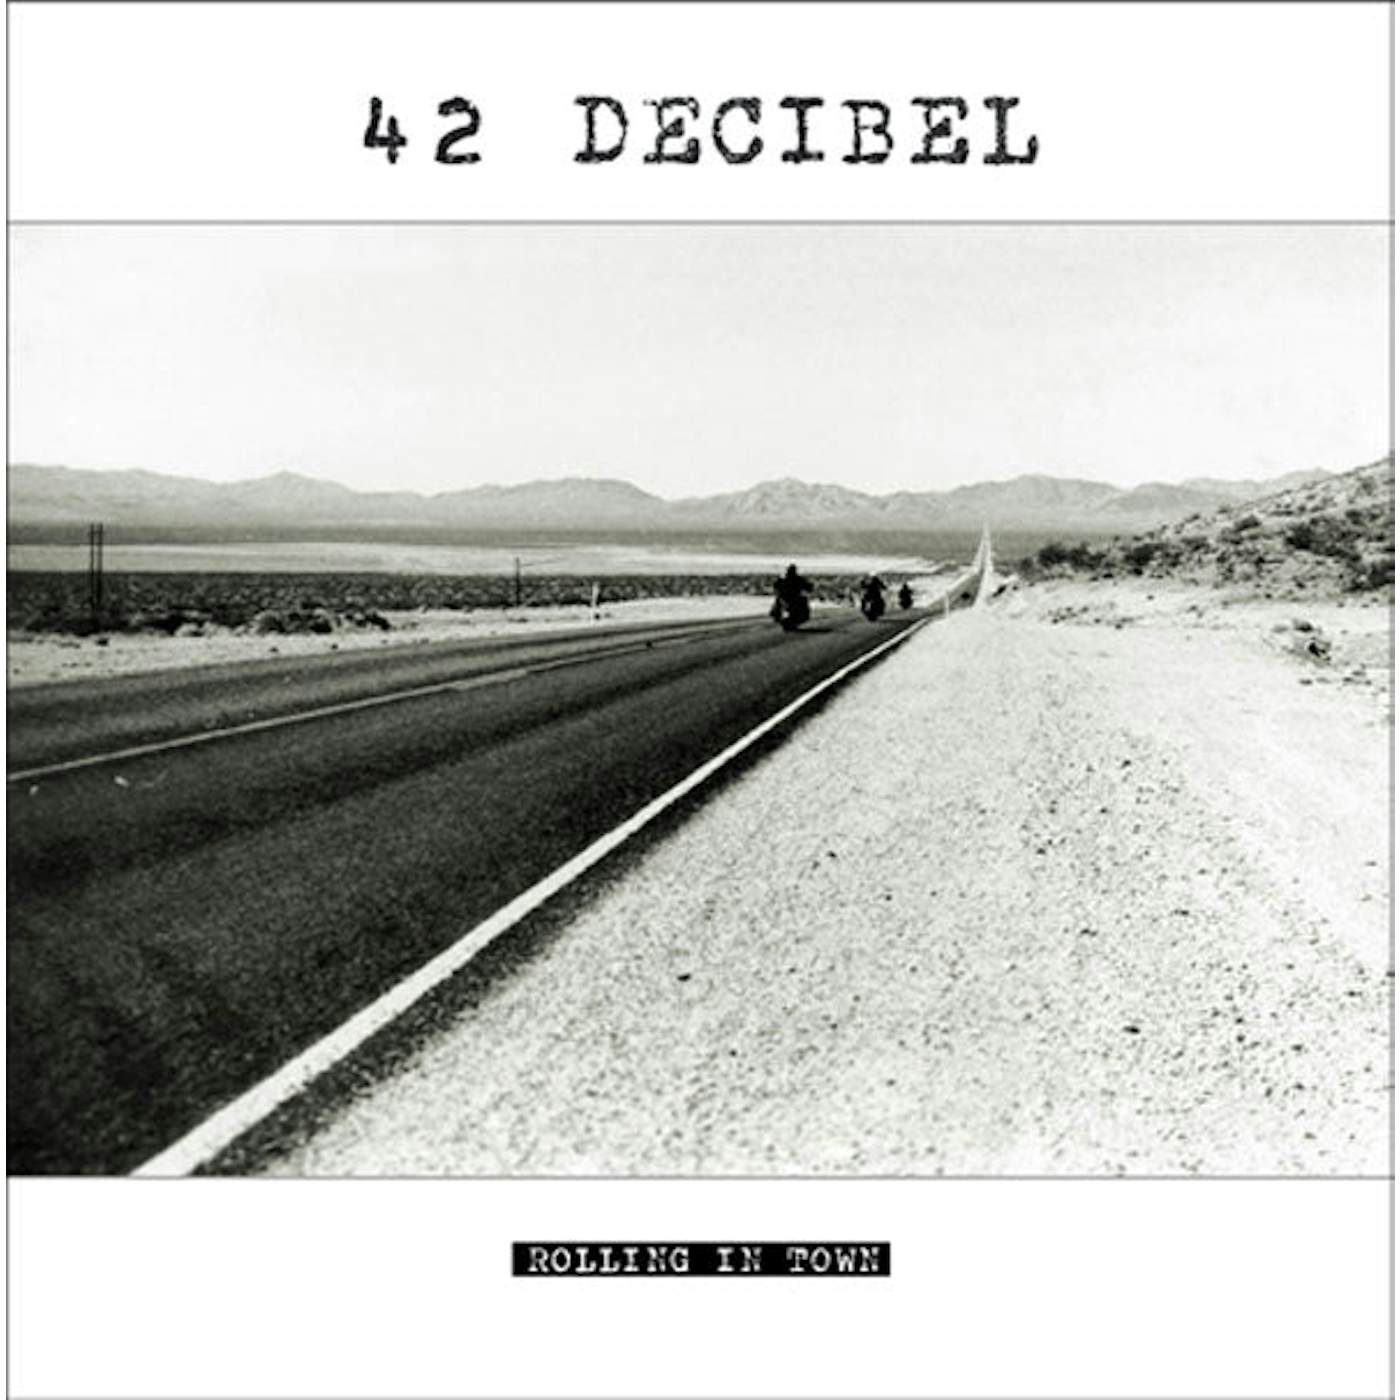 42 Decibel LP - Rolling In Town (Lp+Cd)